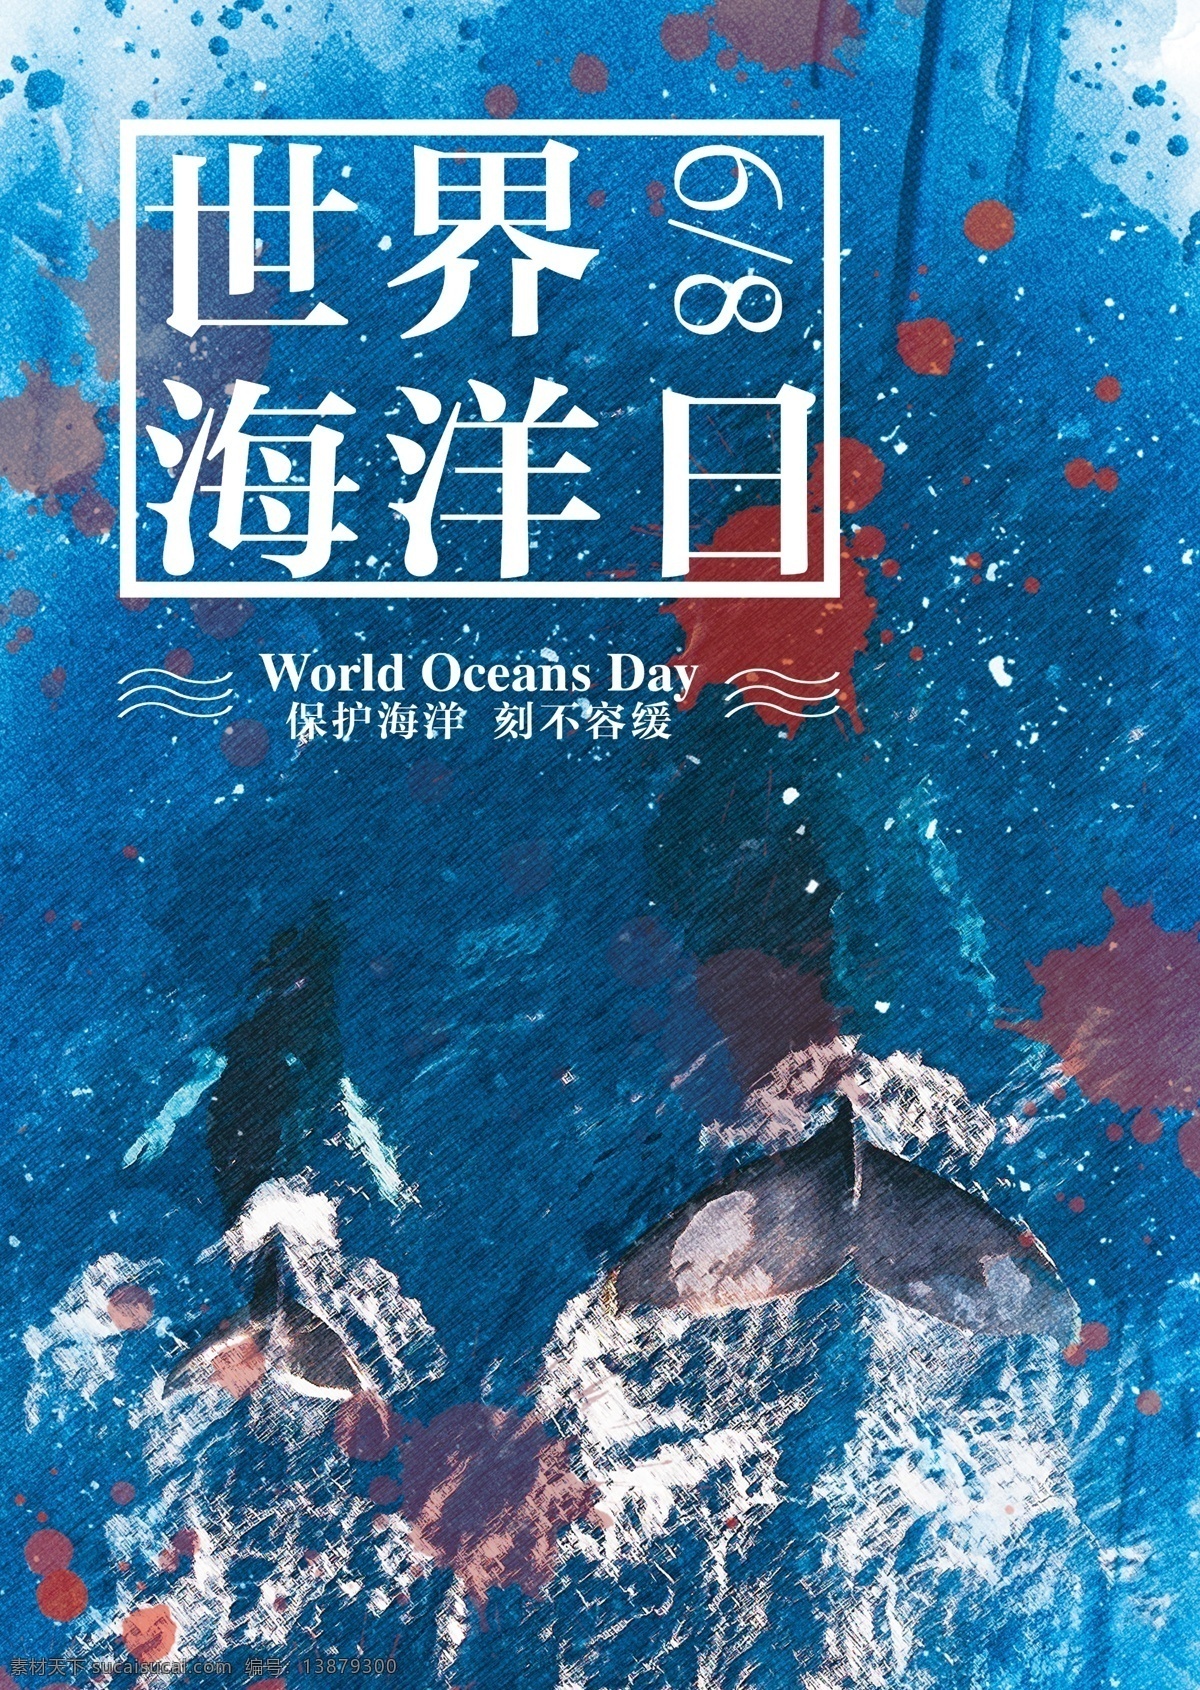 世界海洋日 海洋 鲸鱼 公益 保护海洋 保护动物 公益海报